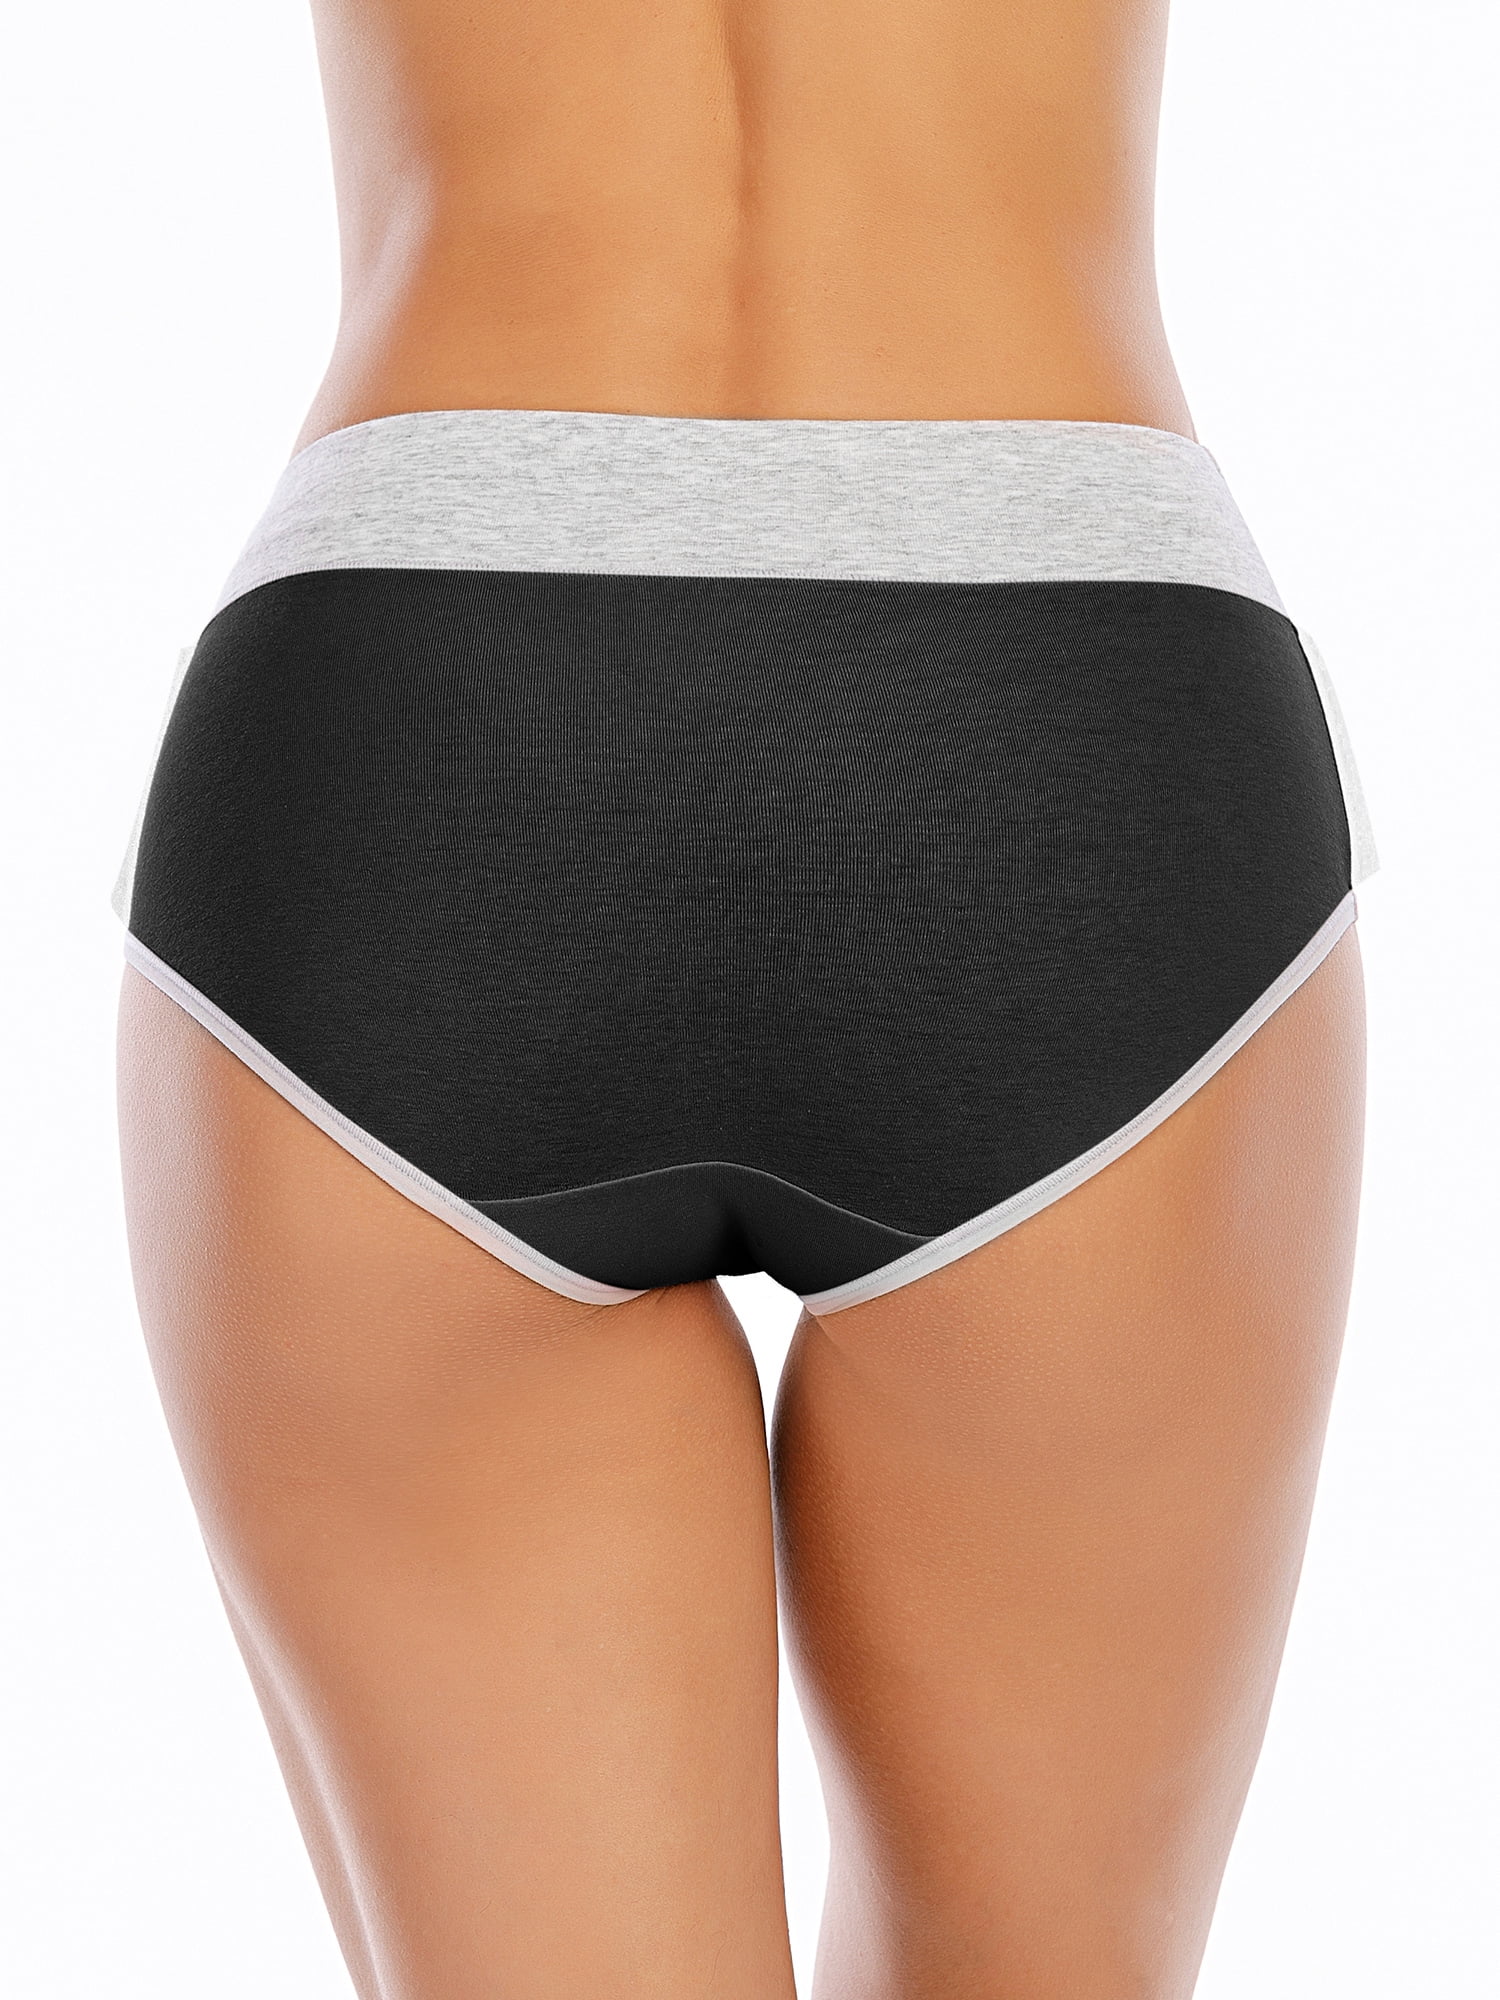 ZOELNIC 5Pcs Women's Solid Color High Waist Cotton Panties Briefs Soft  Breathable Comfy Underwear 